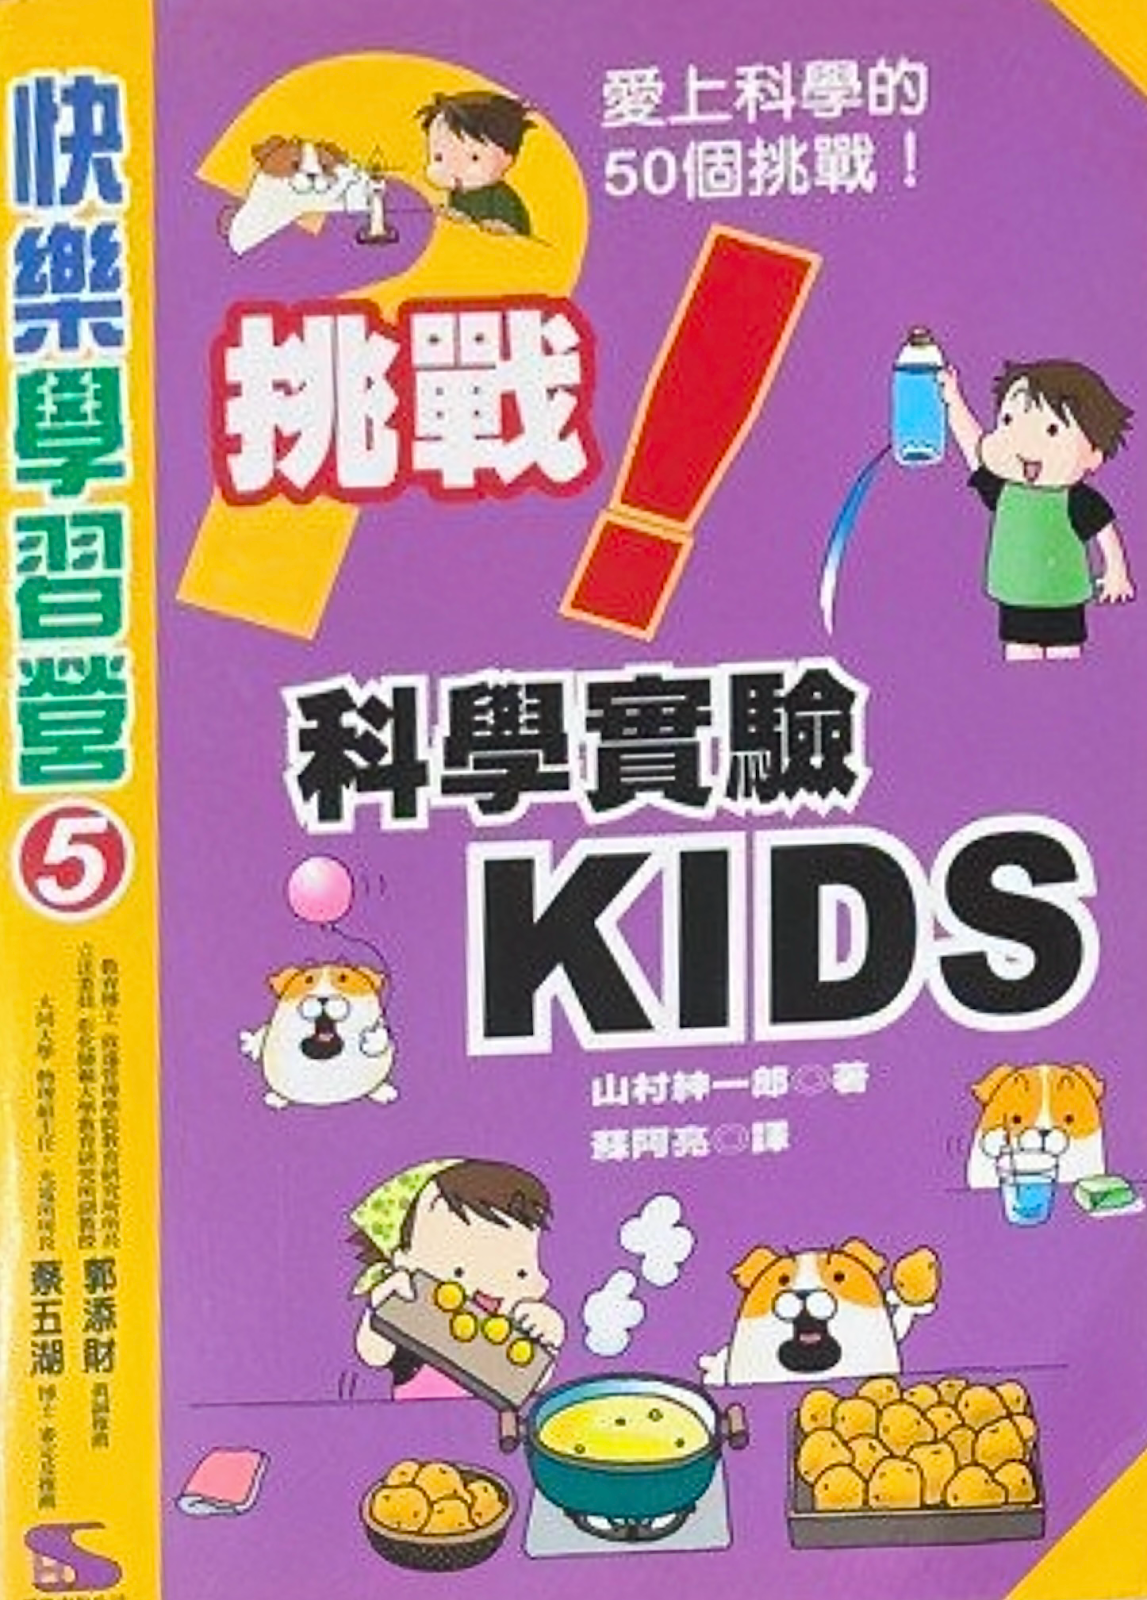 科學實驗KIDS 閱讀 香港 學生 小學生 幼兒園 科學 綜合科學 環保 課外書 書籍 宇宙 環境 教育 